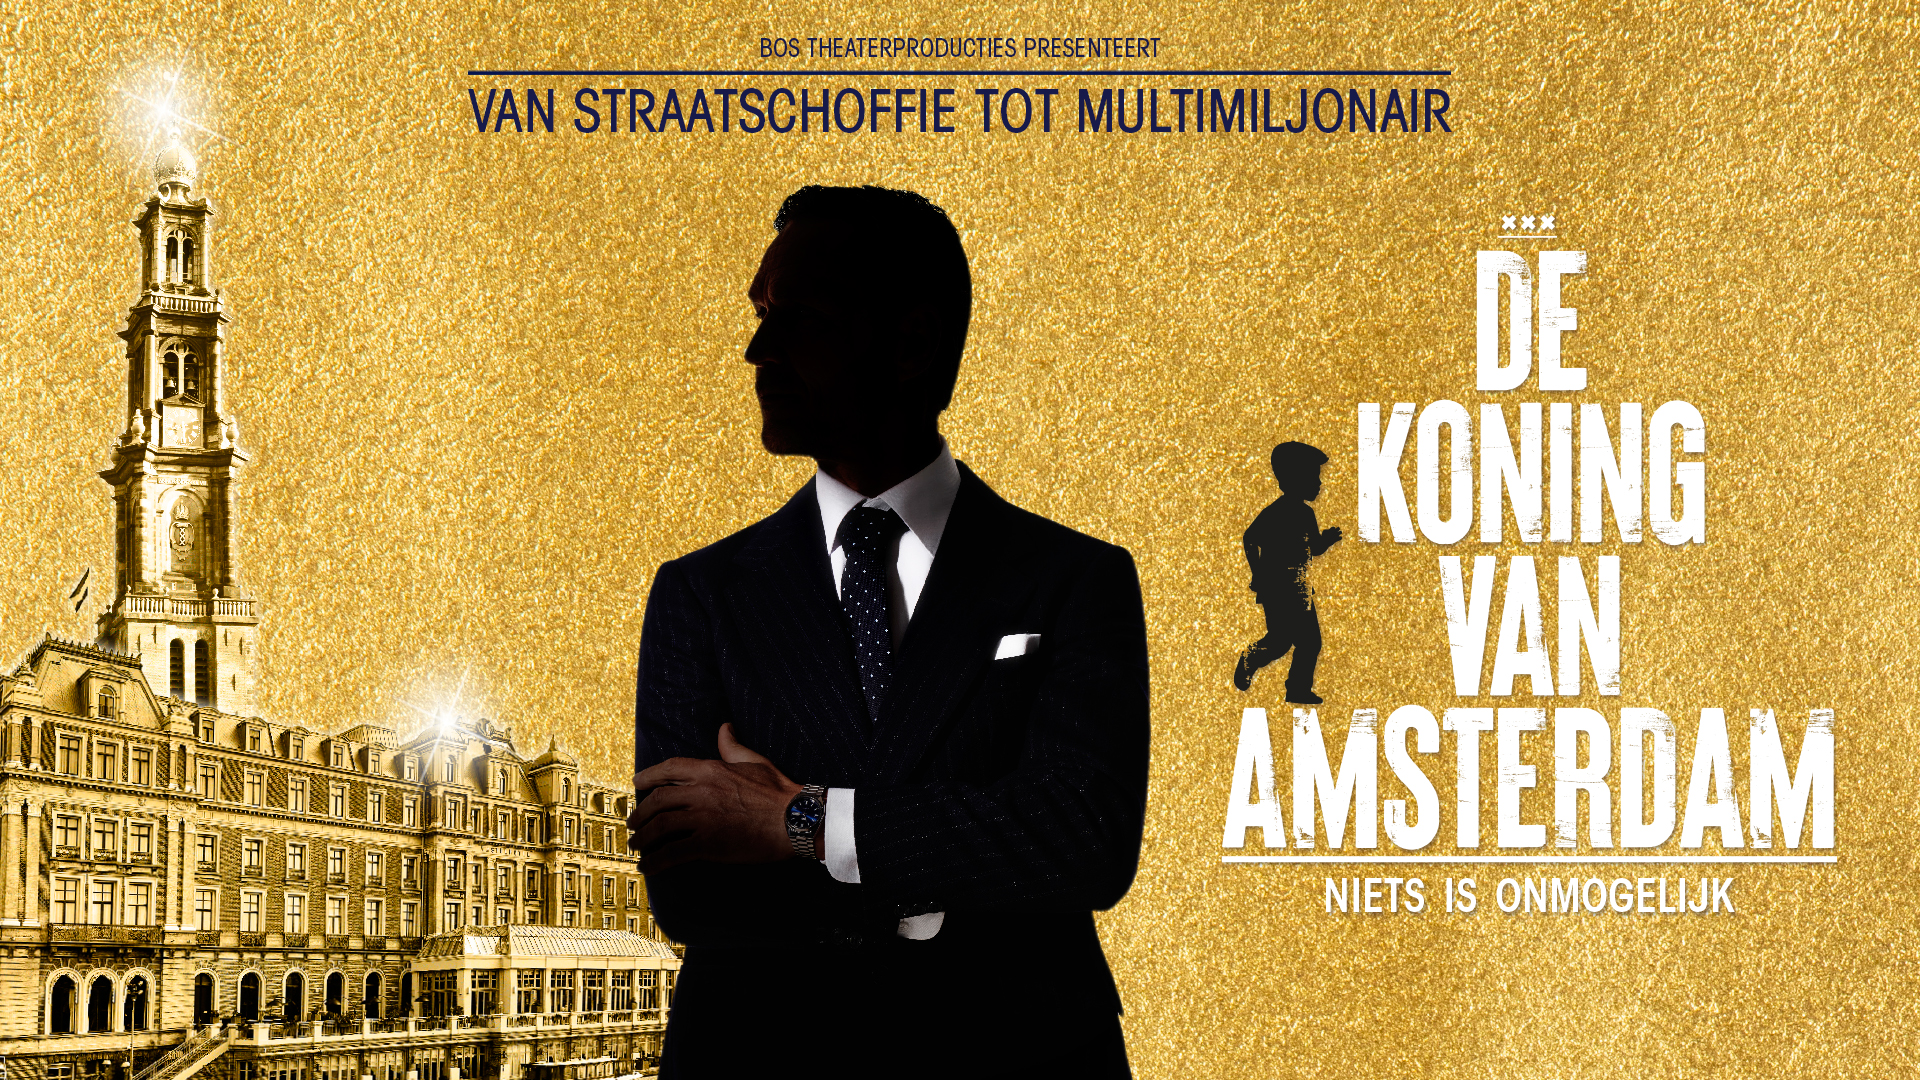 De Koning van Amsterdam